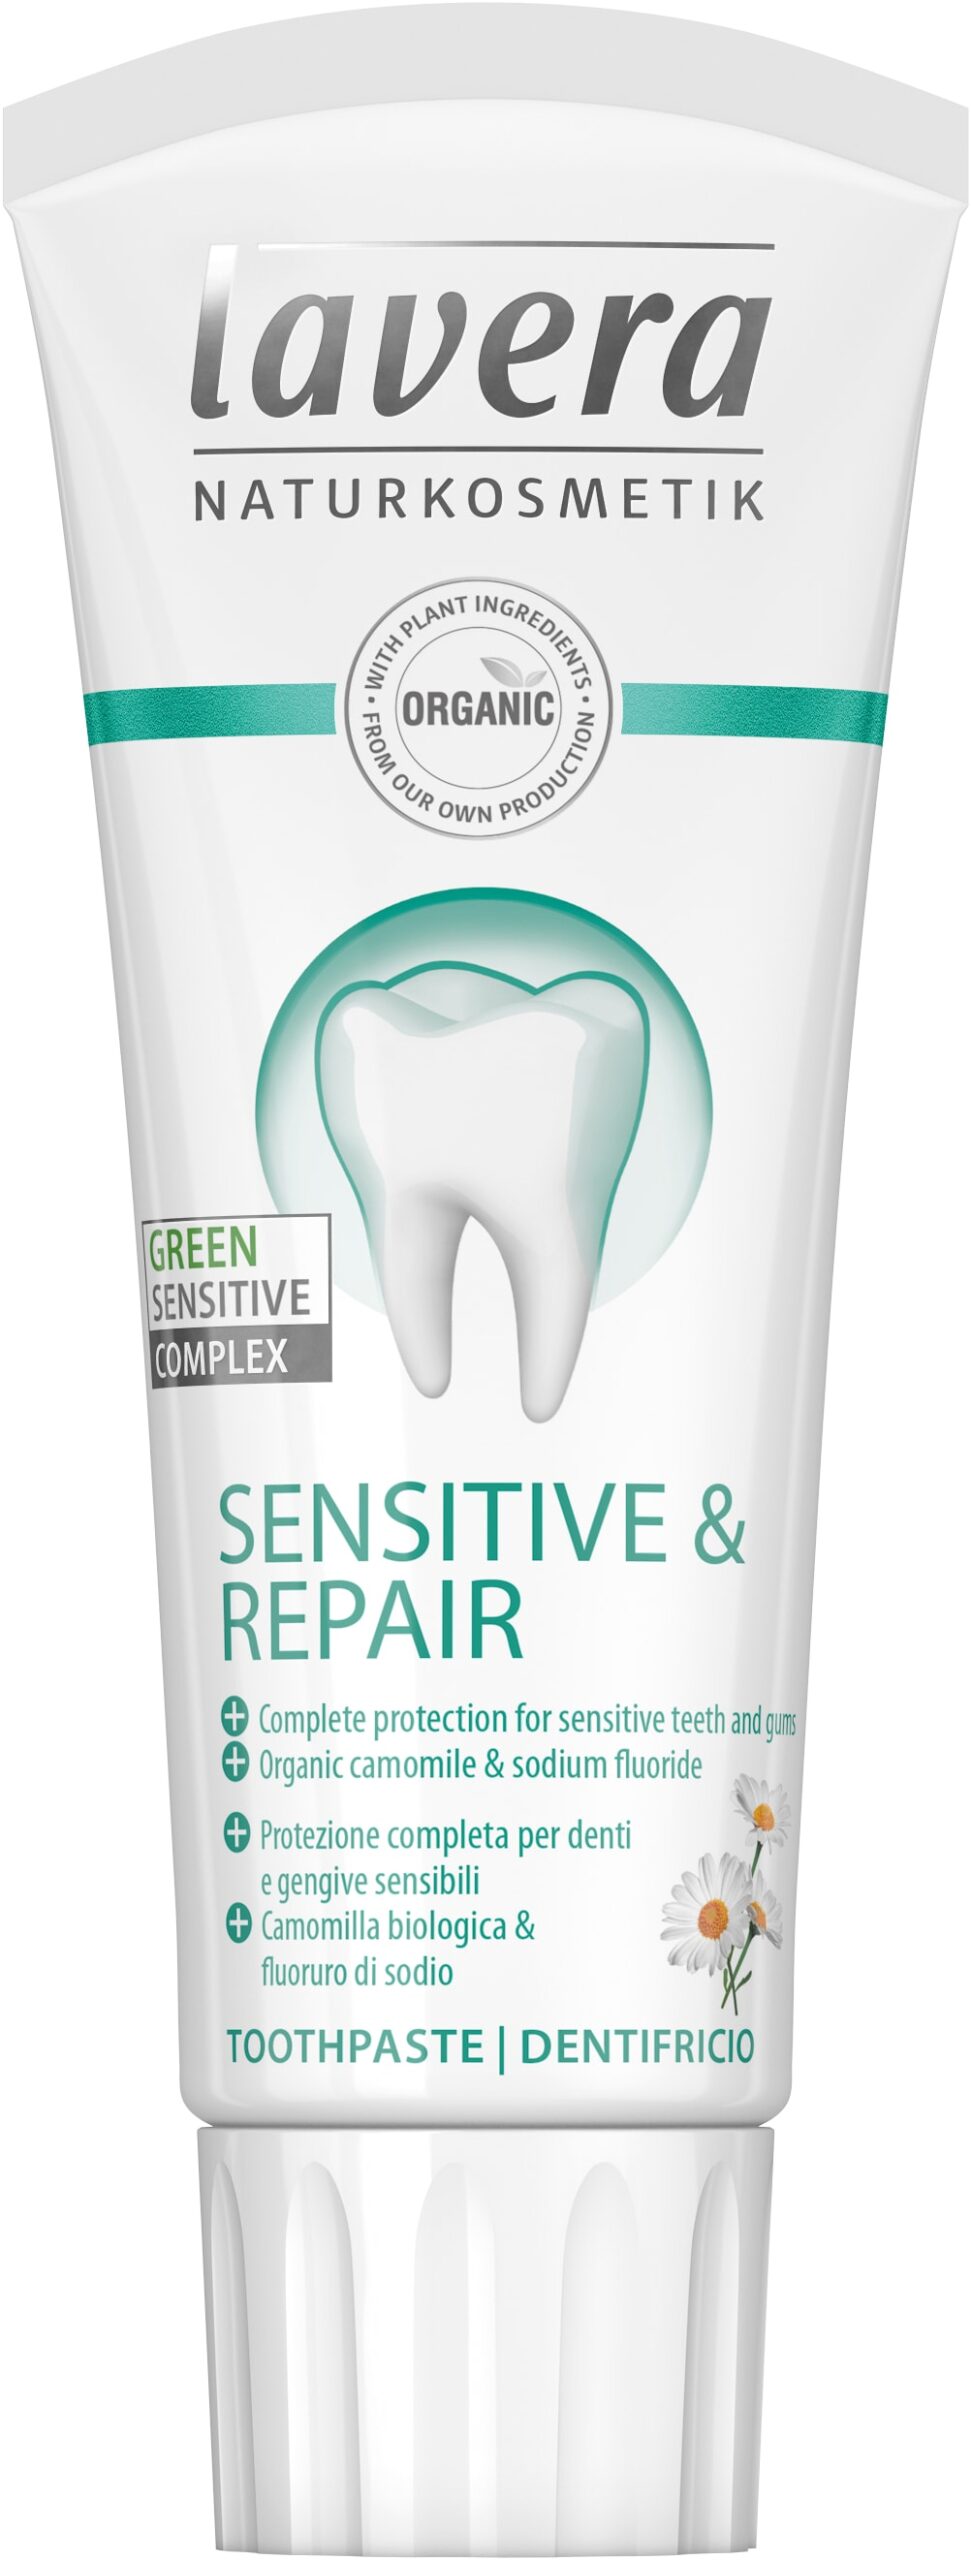 Tandpasta/toothpaste sensitive & repair bio 75 ml Lavera